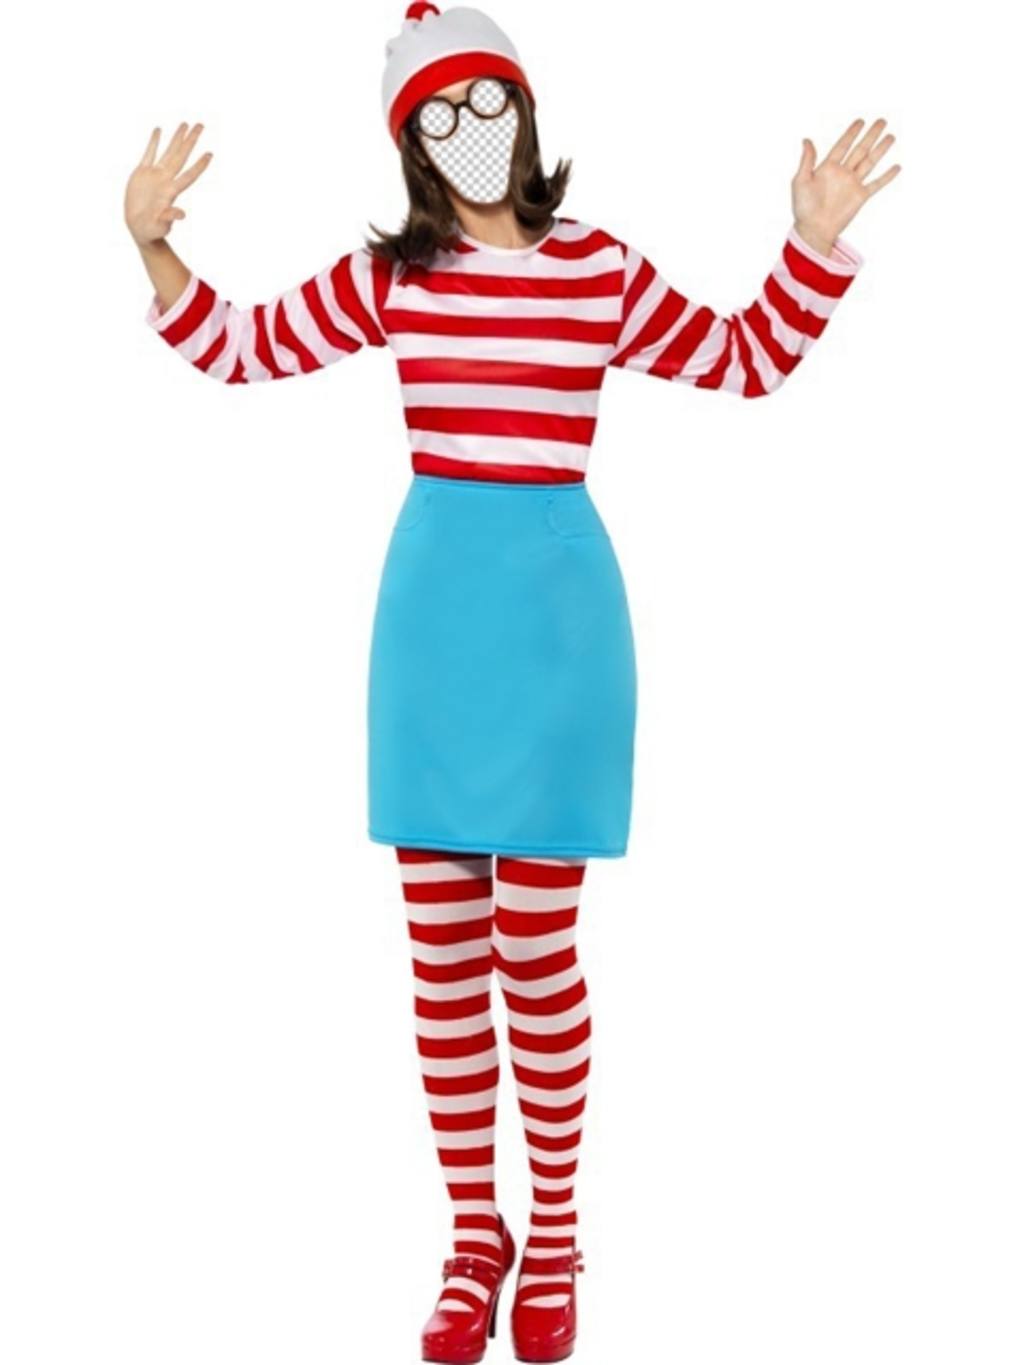 Para a crianças famosas jogo * Onde está Wally? * Vem esta fotomontagem em que você pode se tornar Walda ..